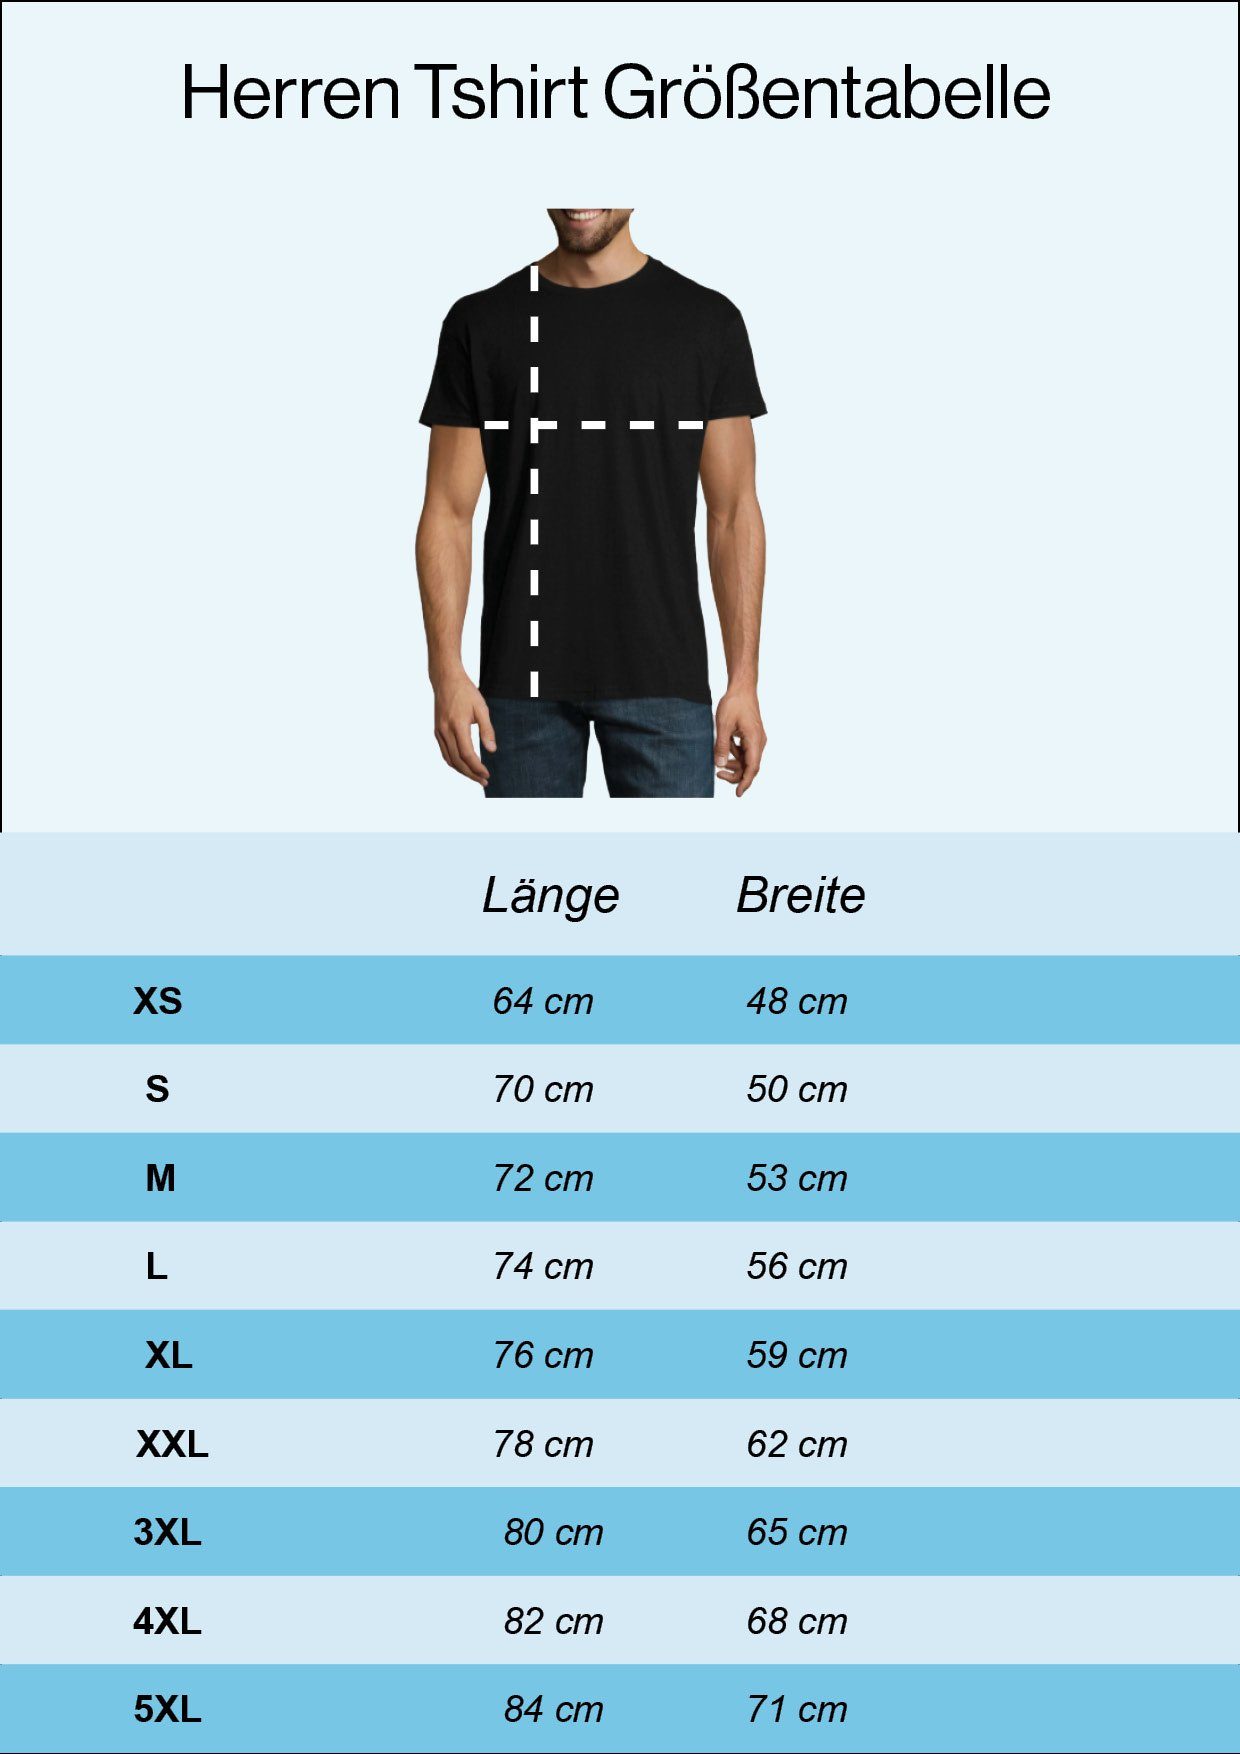 Schwarz T-Shirt Youth mit Corona Designz Herren modischem Survivor Shirt Frontprint